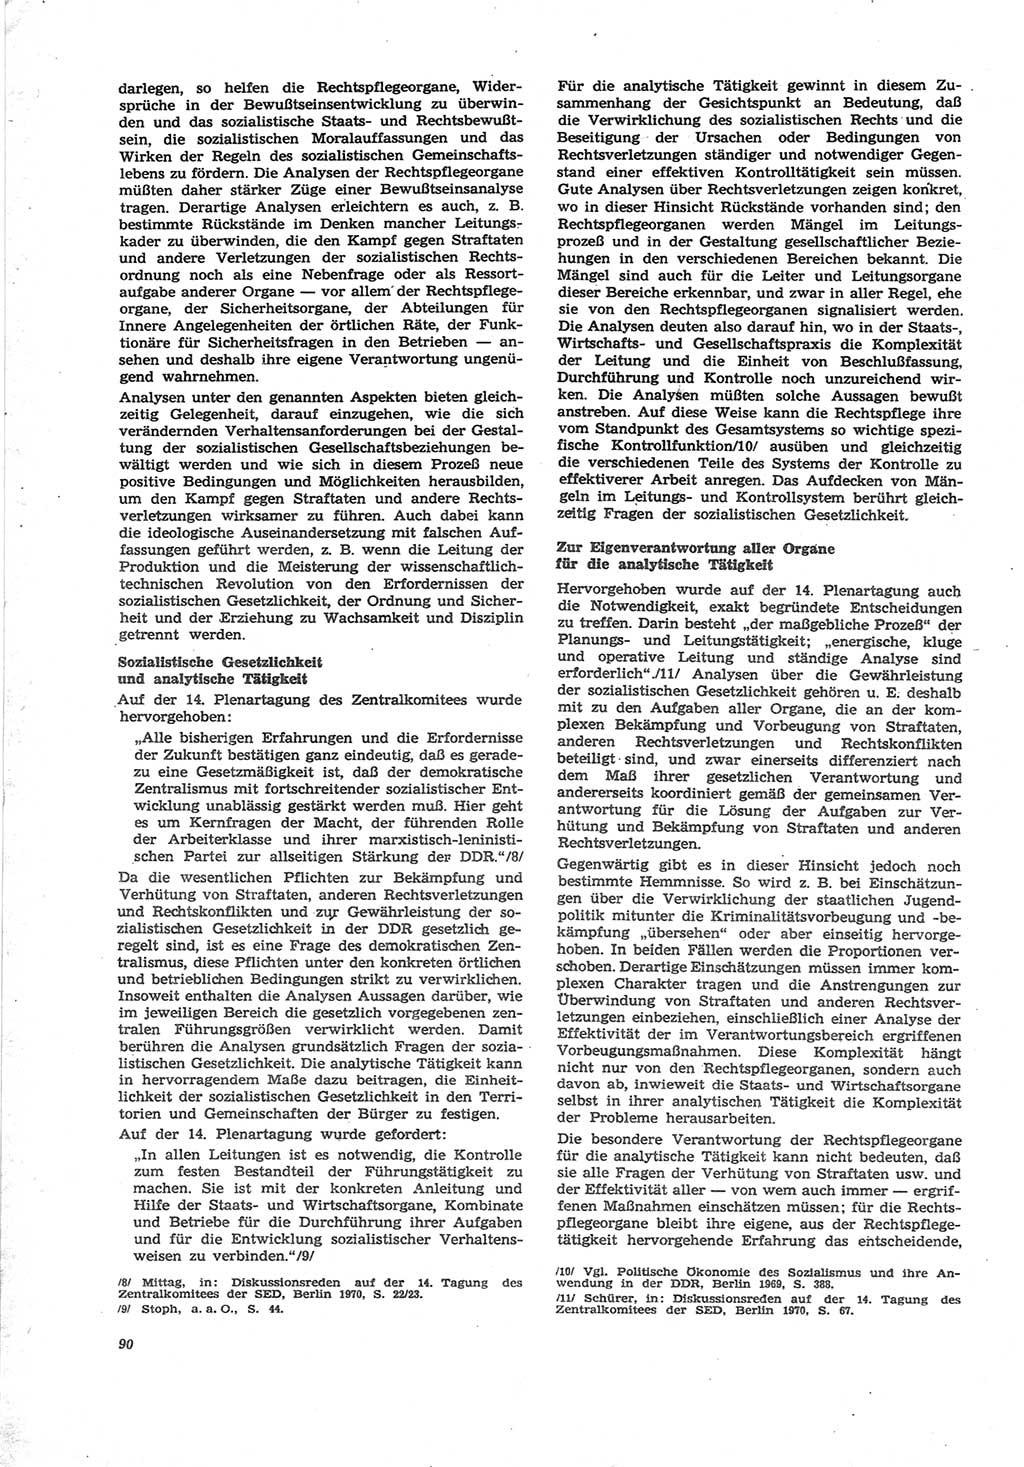 Neue Justiz (NJ), Zeitschrift für Recht und Rechtswissenschaft [Deutsche Demokratische Republik (DDR)], 25. Jahrgang 1971, Seite 90 (NJ DDR 1971, S. 90)